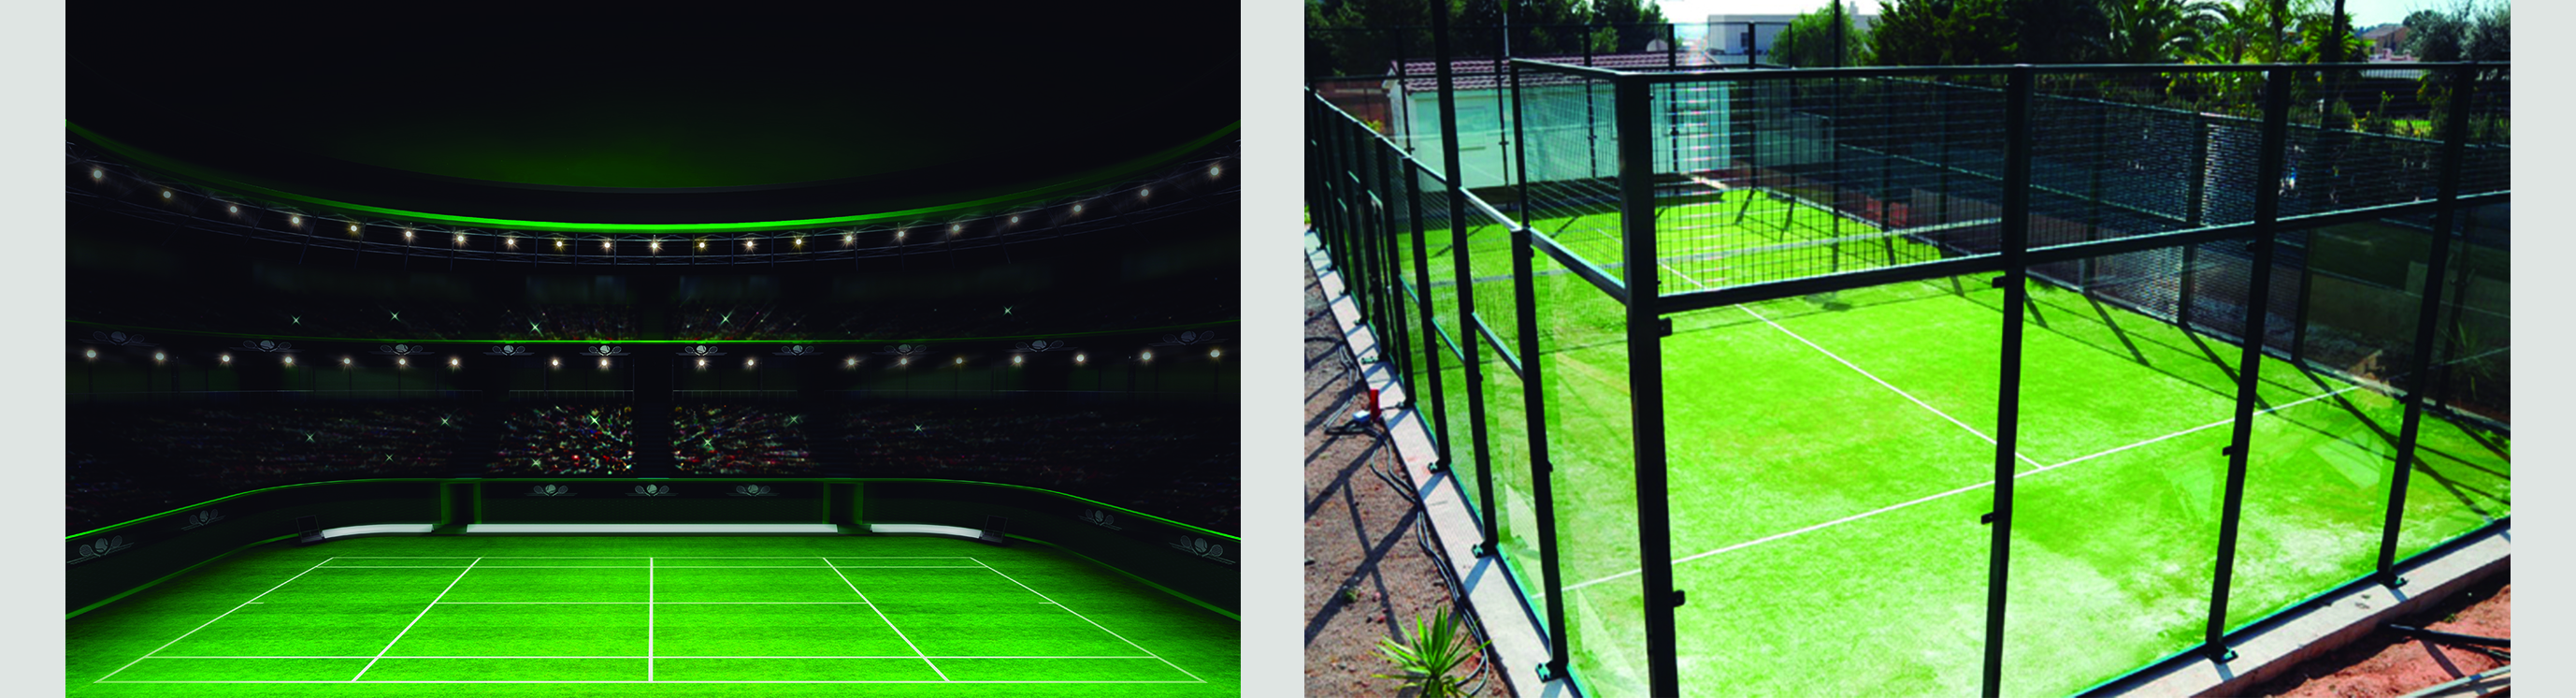 Diferencias entre el tenis y el pádel pista Diferencias entre el Tenis y el Pádel. Las 5 más importantes.